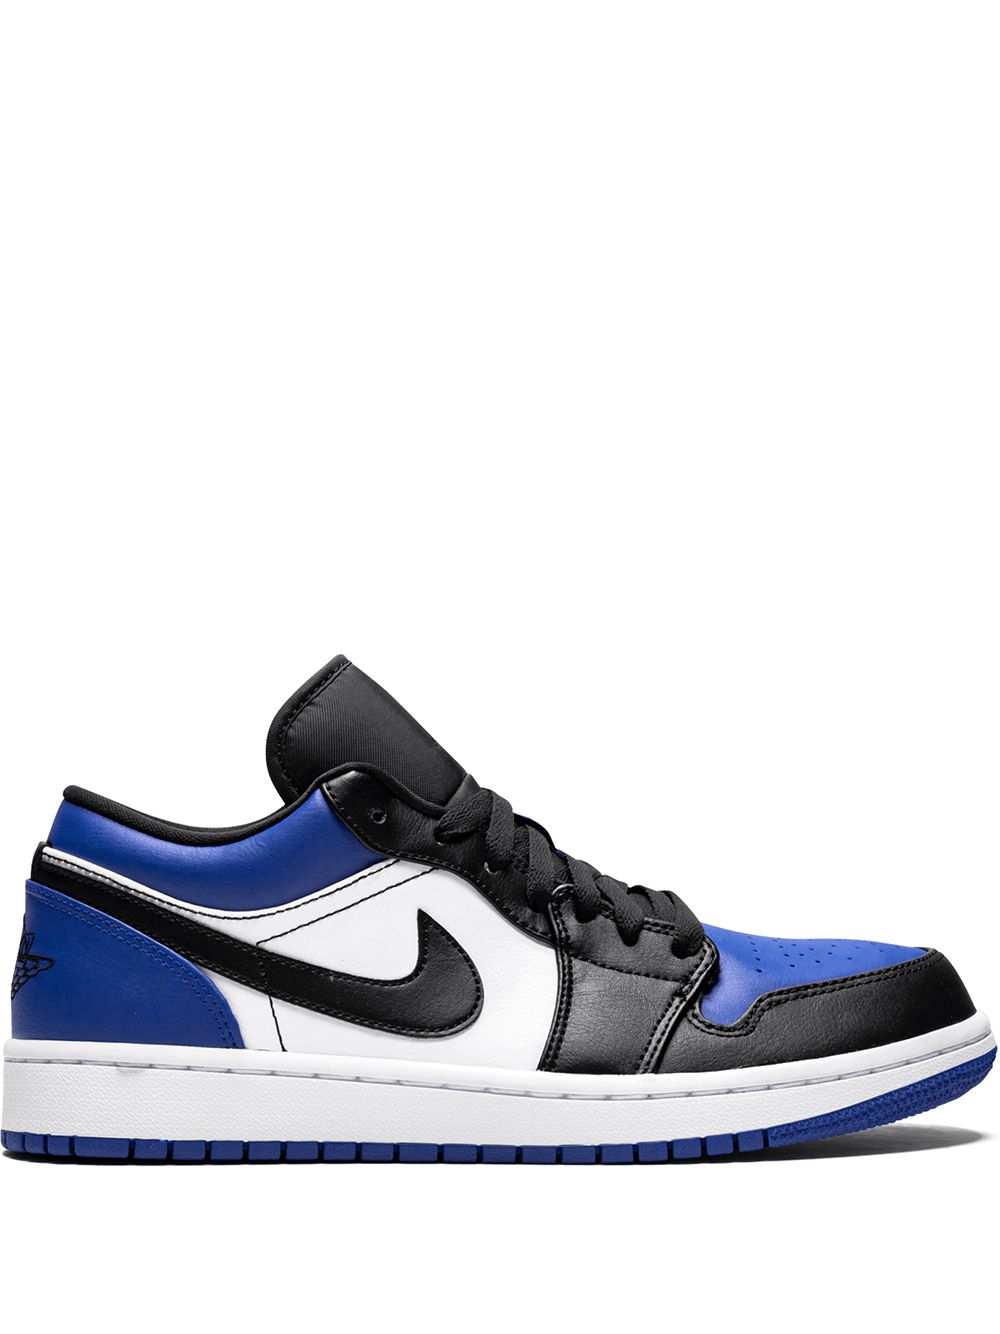 Jordan Air Jordan 1 Low "Royal Toe" sneakers - Blue von Jordan